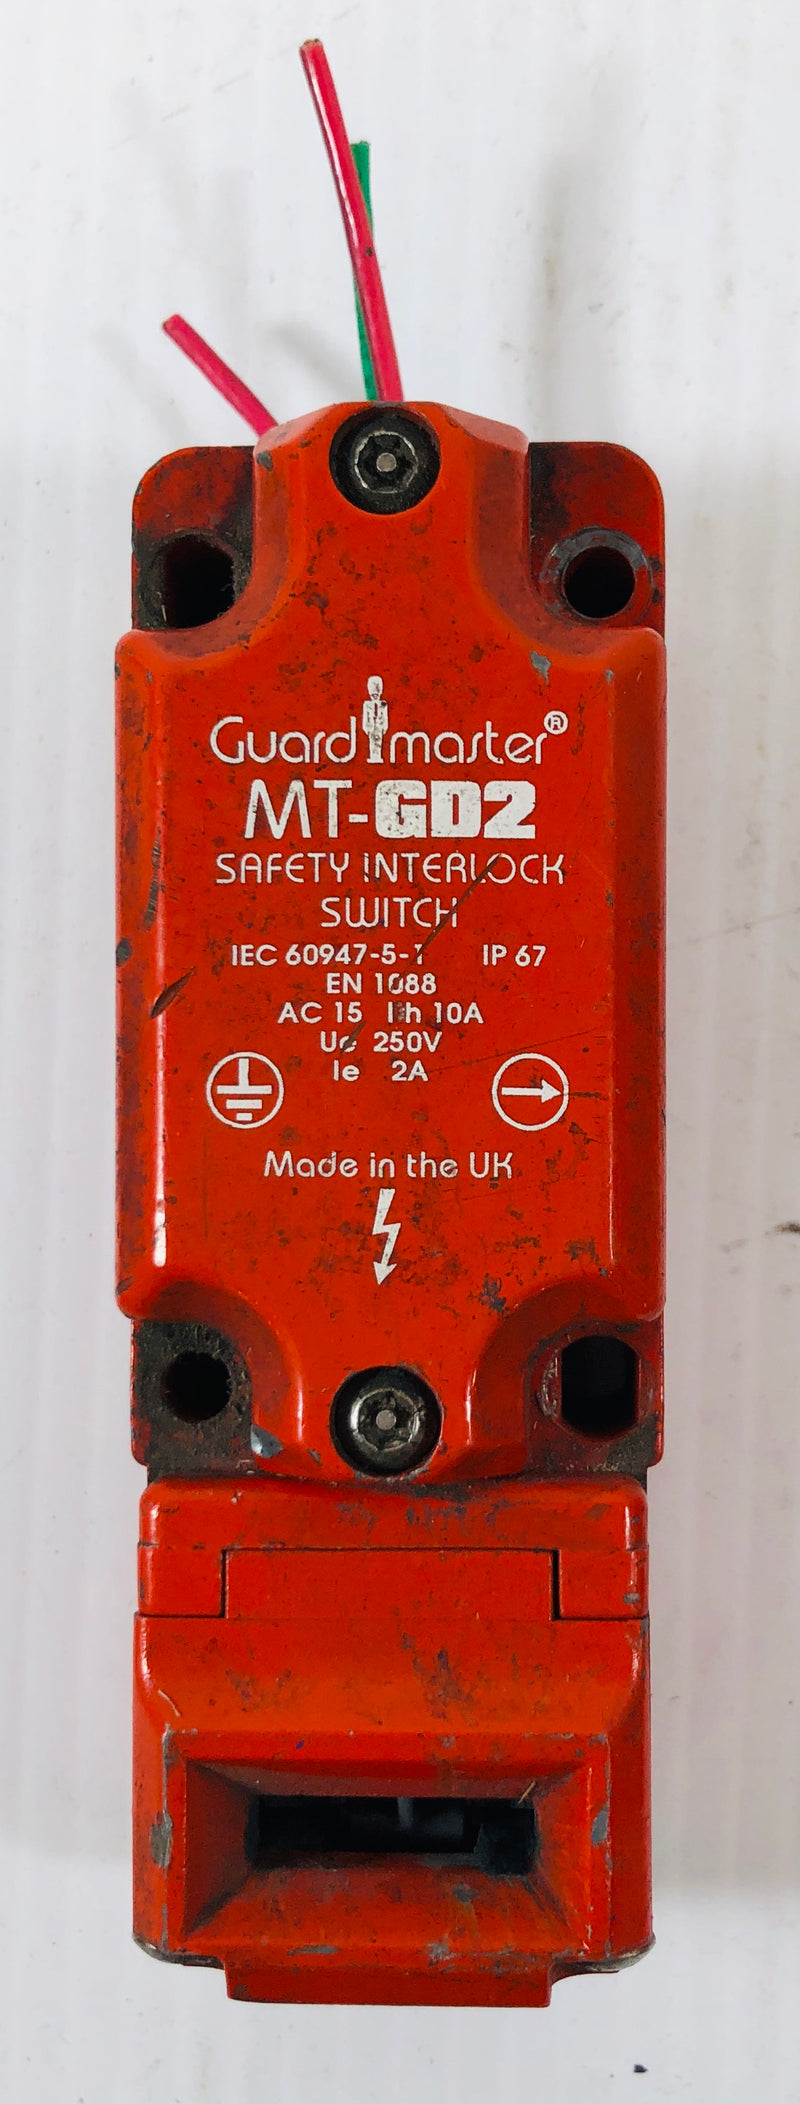 Allen-Bradley Guardmaster Safety Interlock Switch MT-GD2